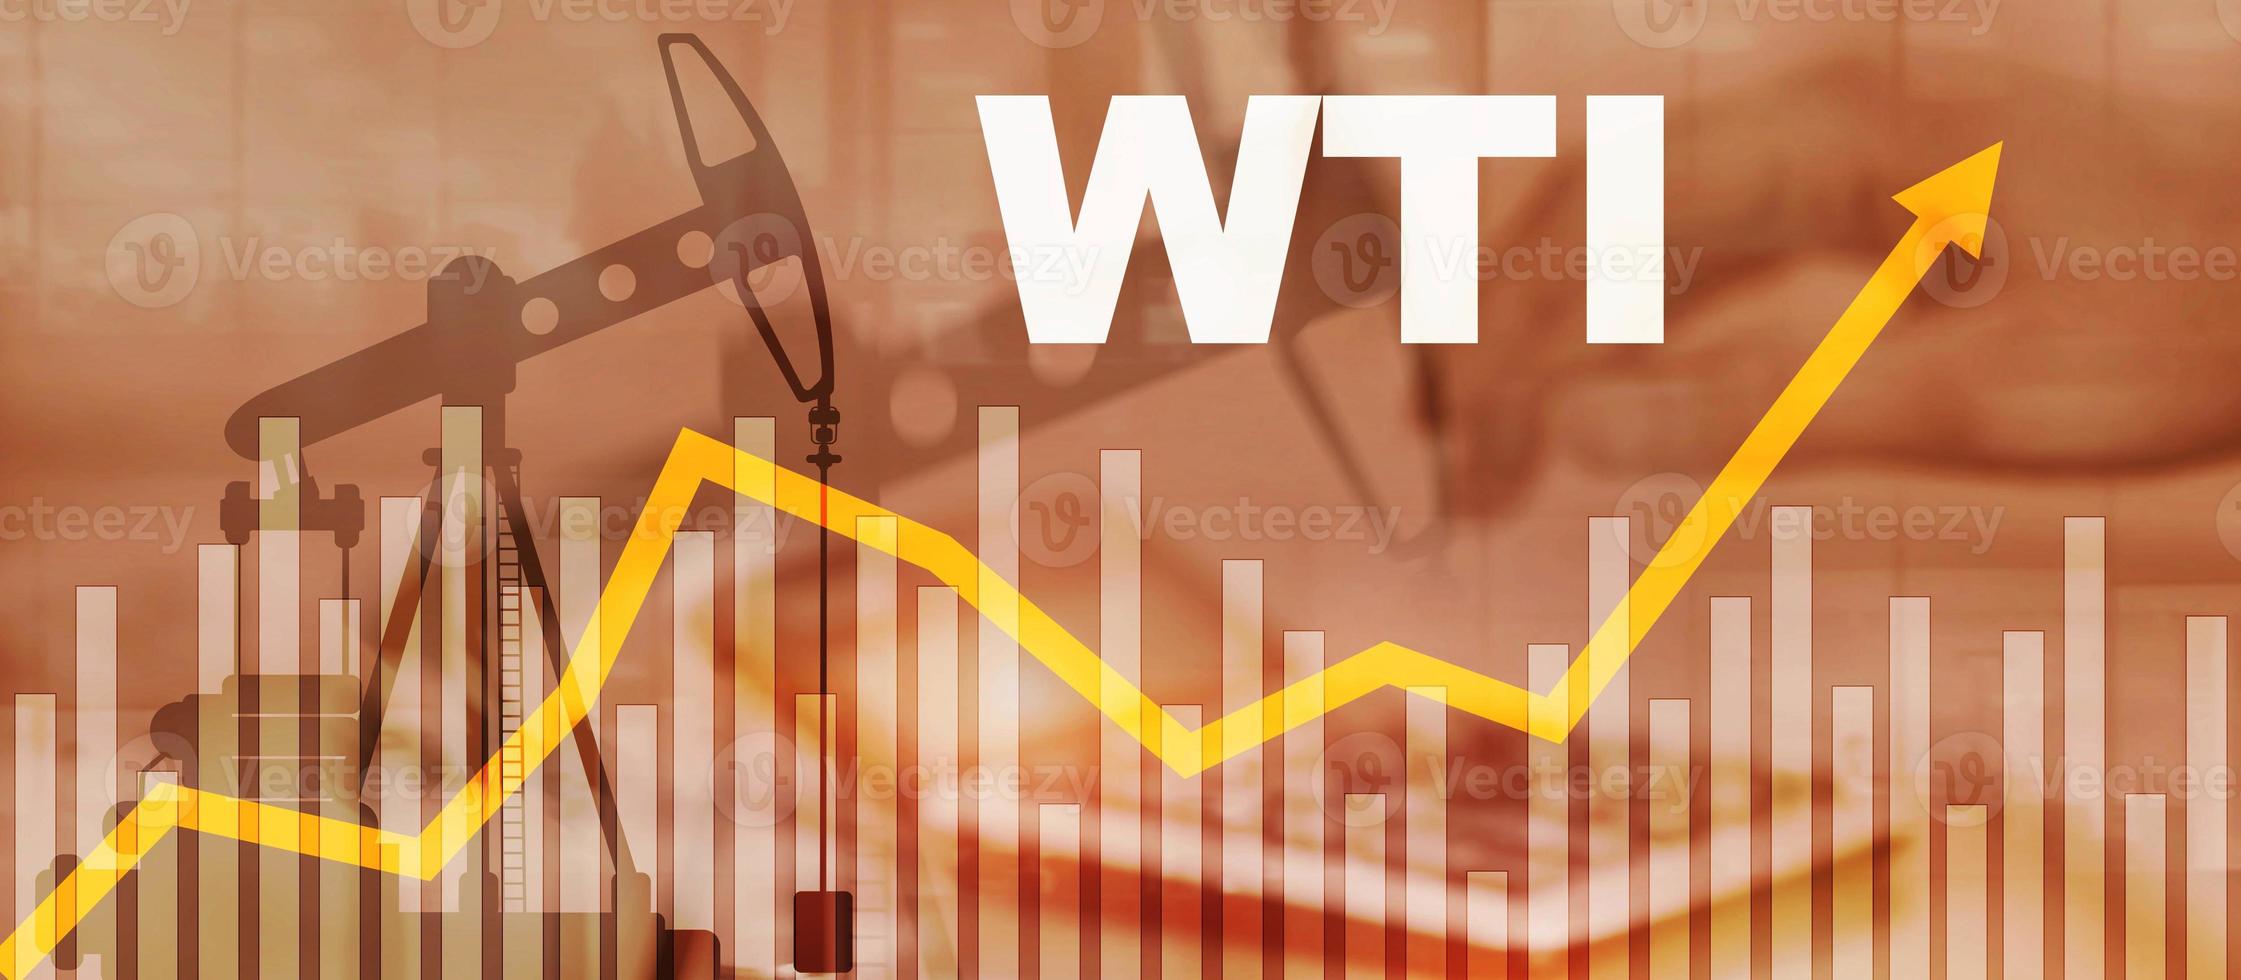 stiga i priser av en tunna av wti rå olja 2020. upp pil. foto